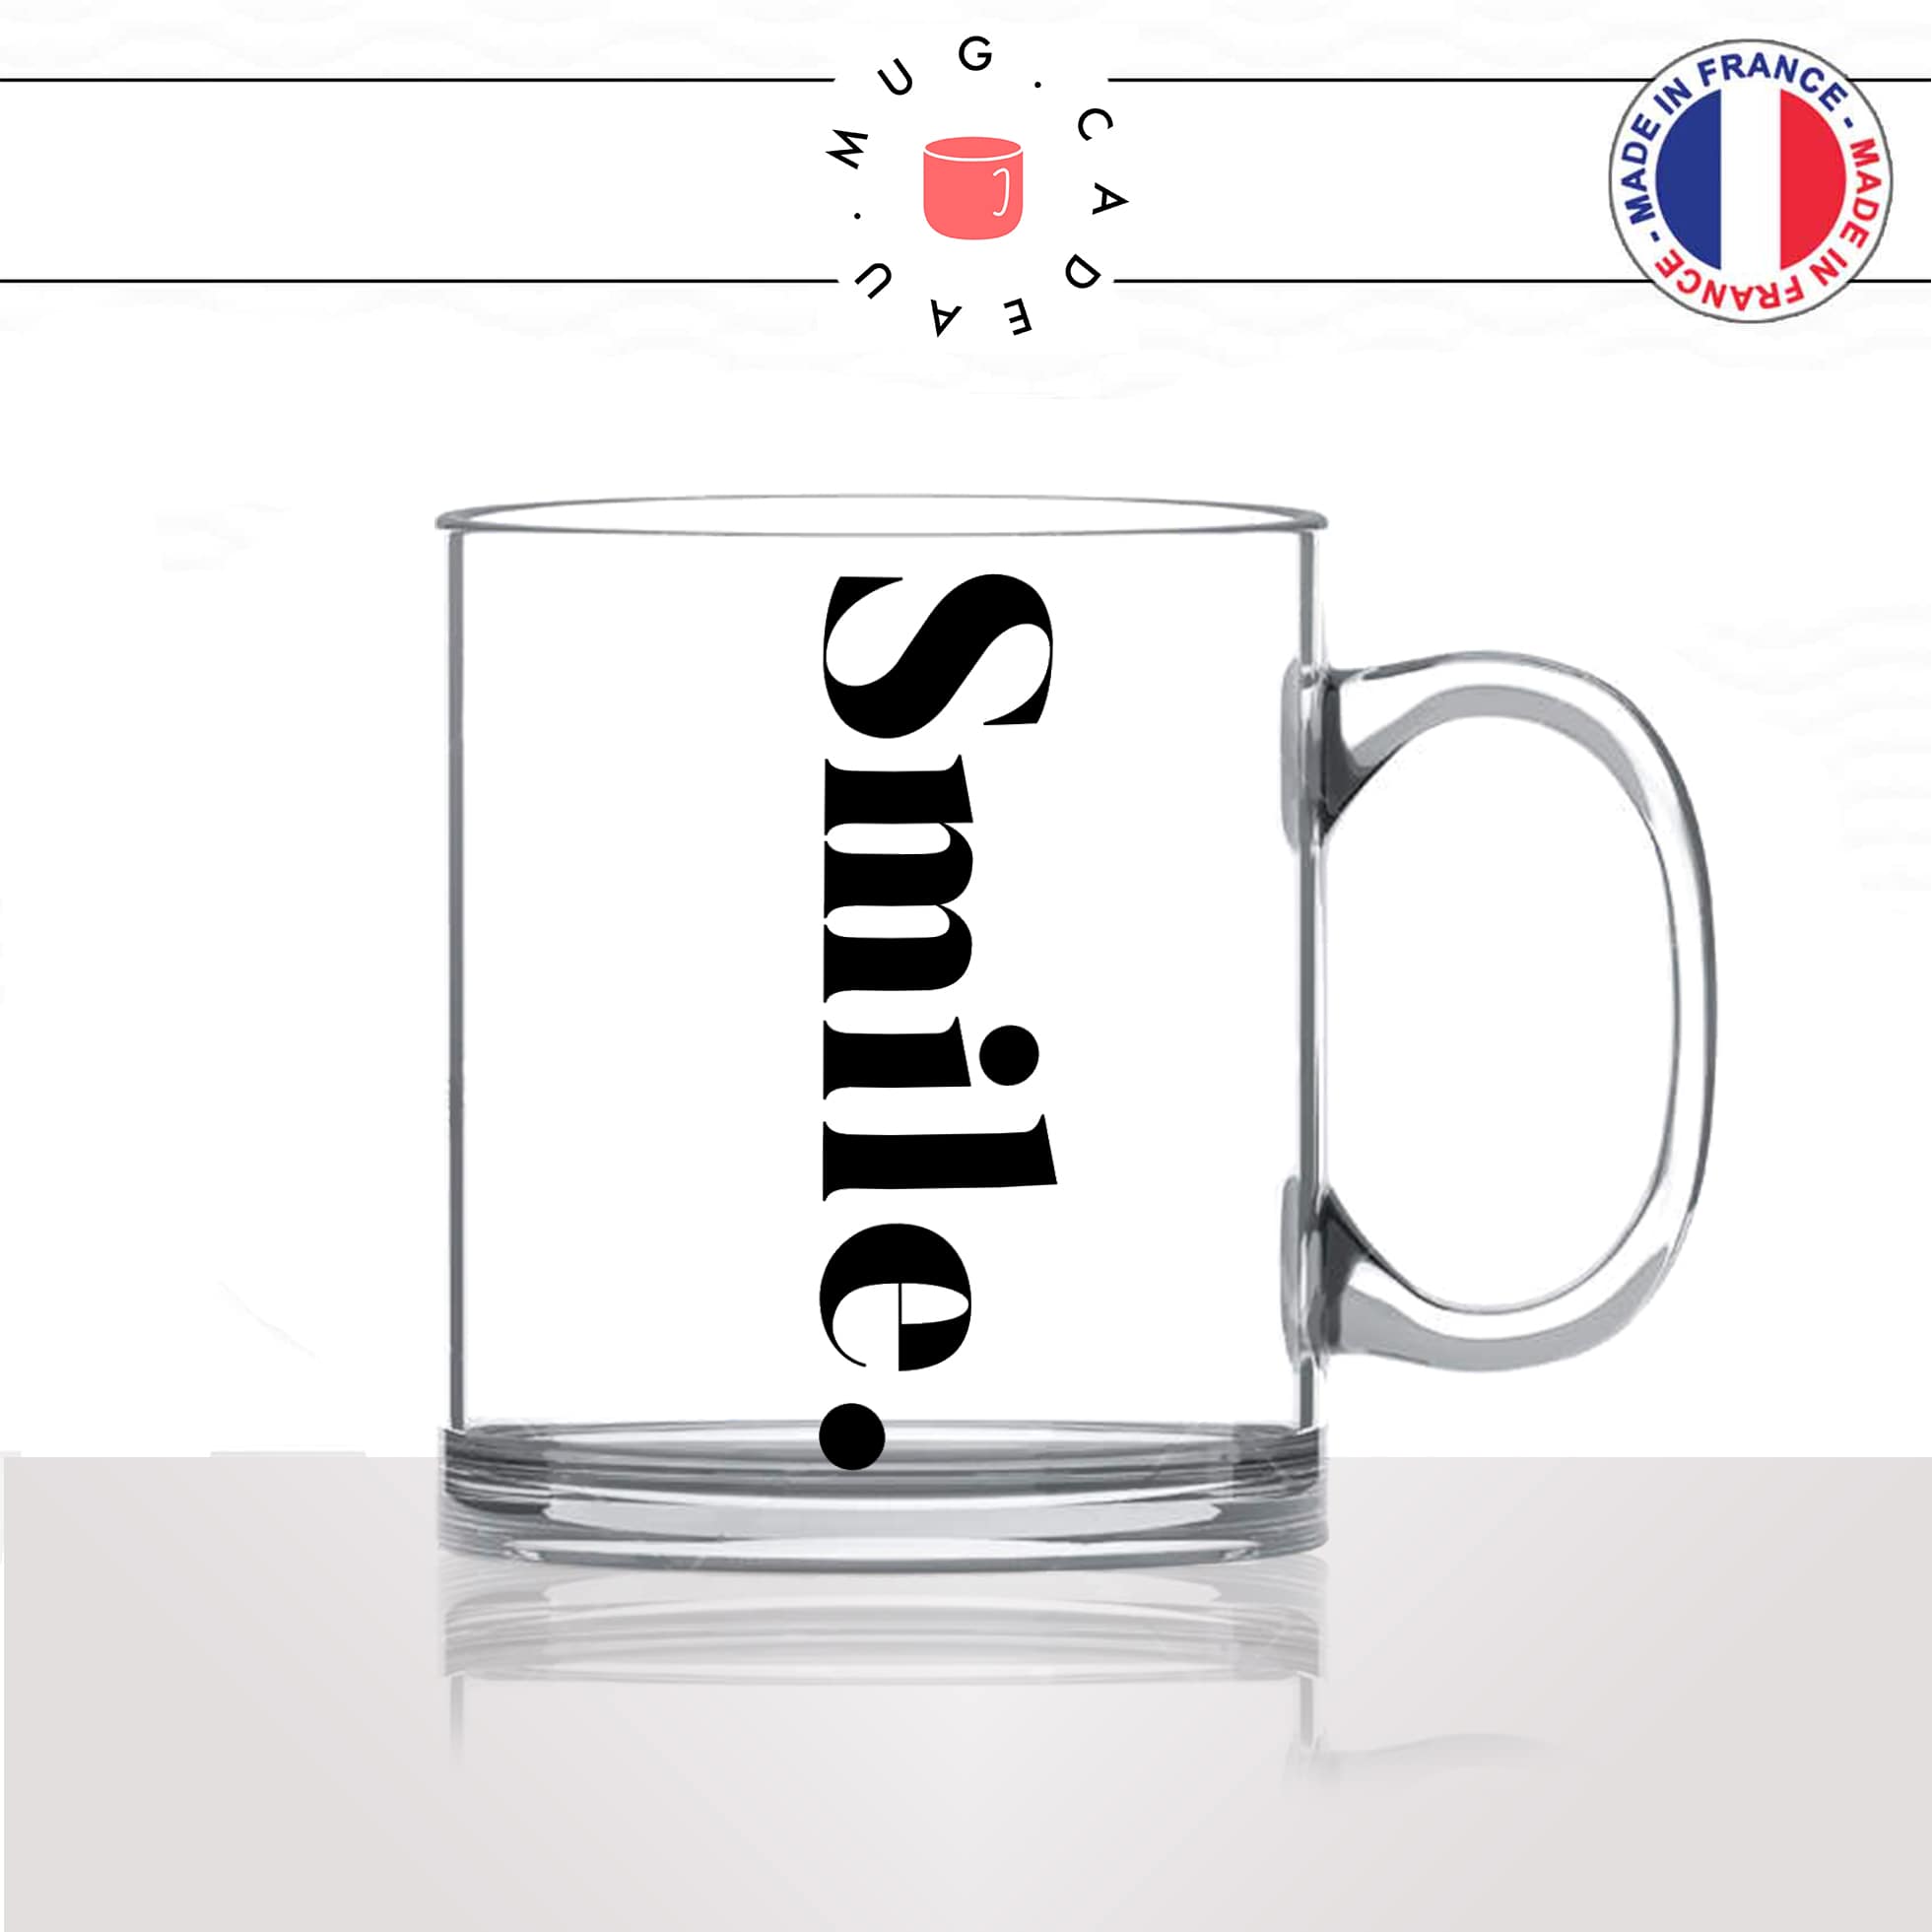 mug-tasse-en-verre-transparent-glass-smile-sourire-calligraphie-lettrine-mot-anglais-collegue-décoration-amie-idée-cadeau-original-personnalisé-café-thé2-min